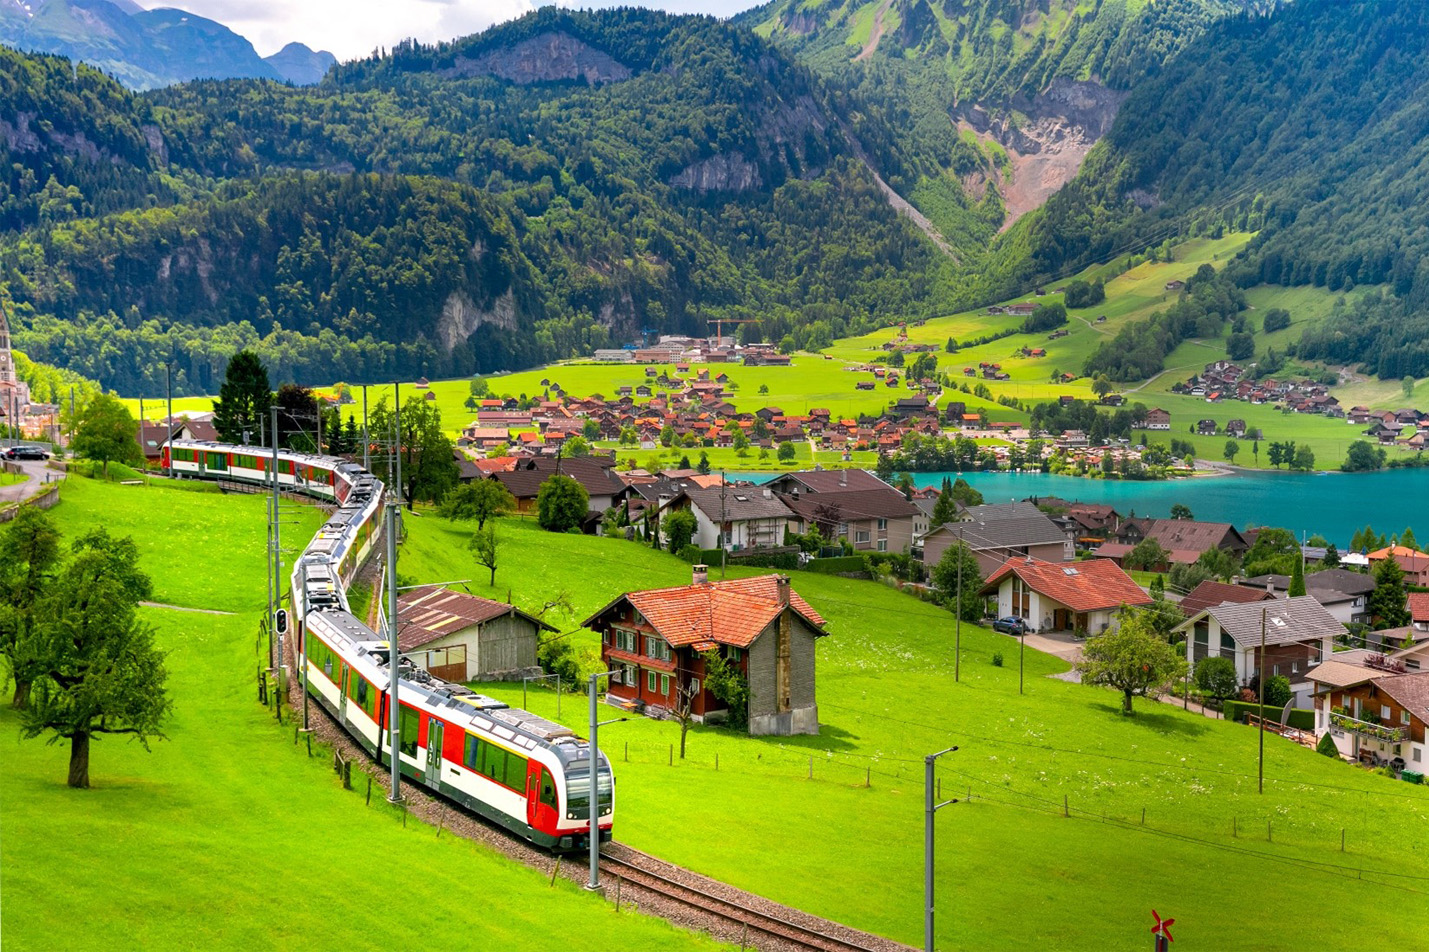 เที่ยวสวิสเซอร์แลนด์ด้วยรถไฟ